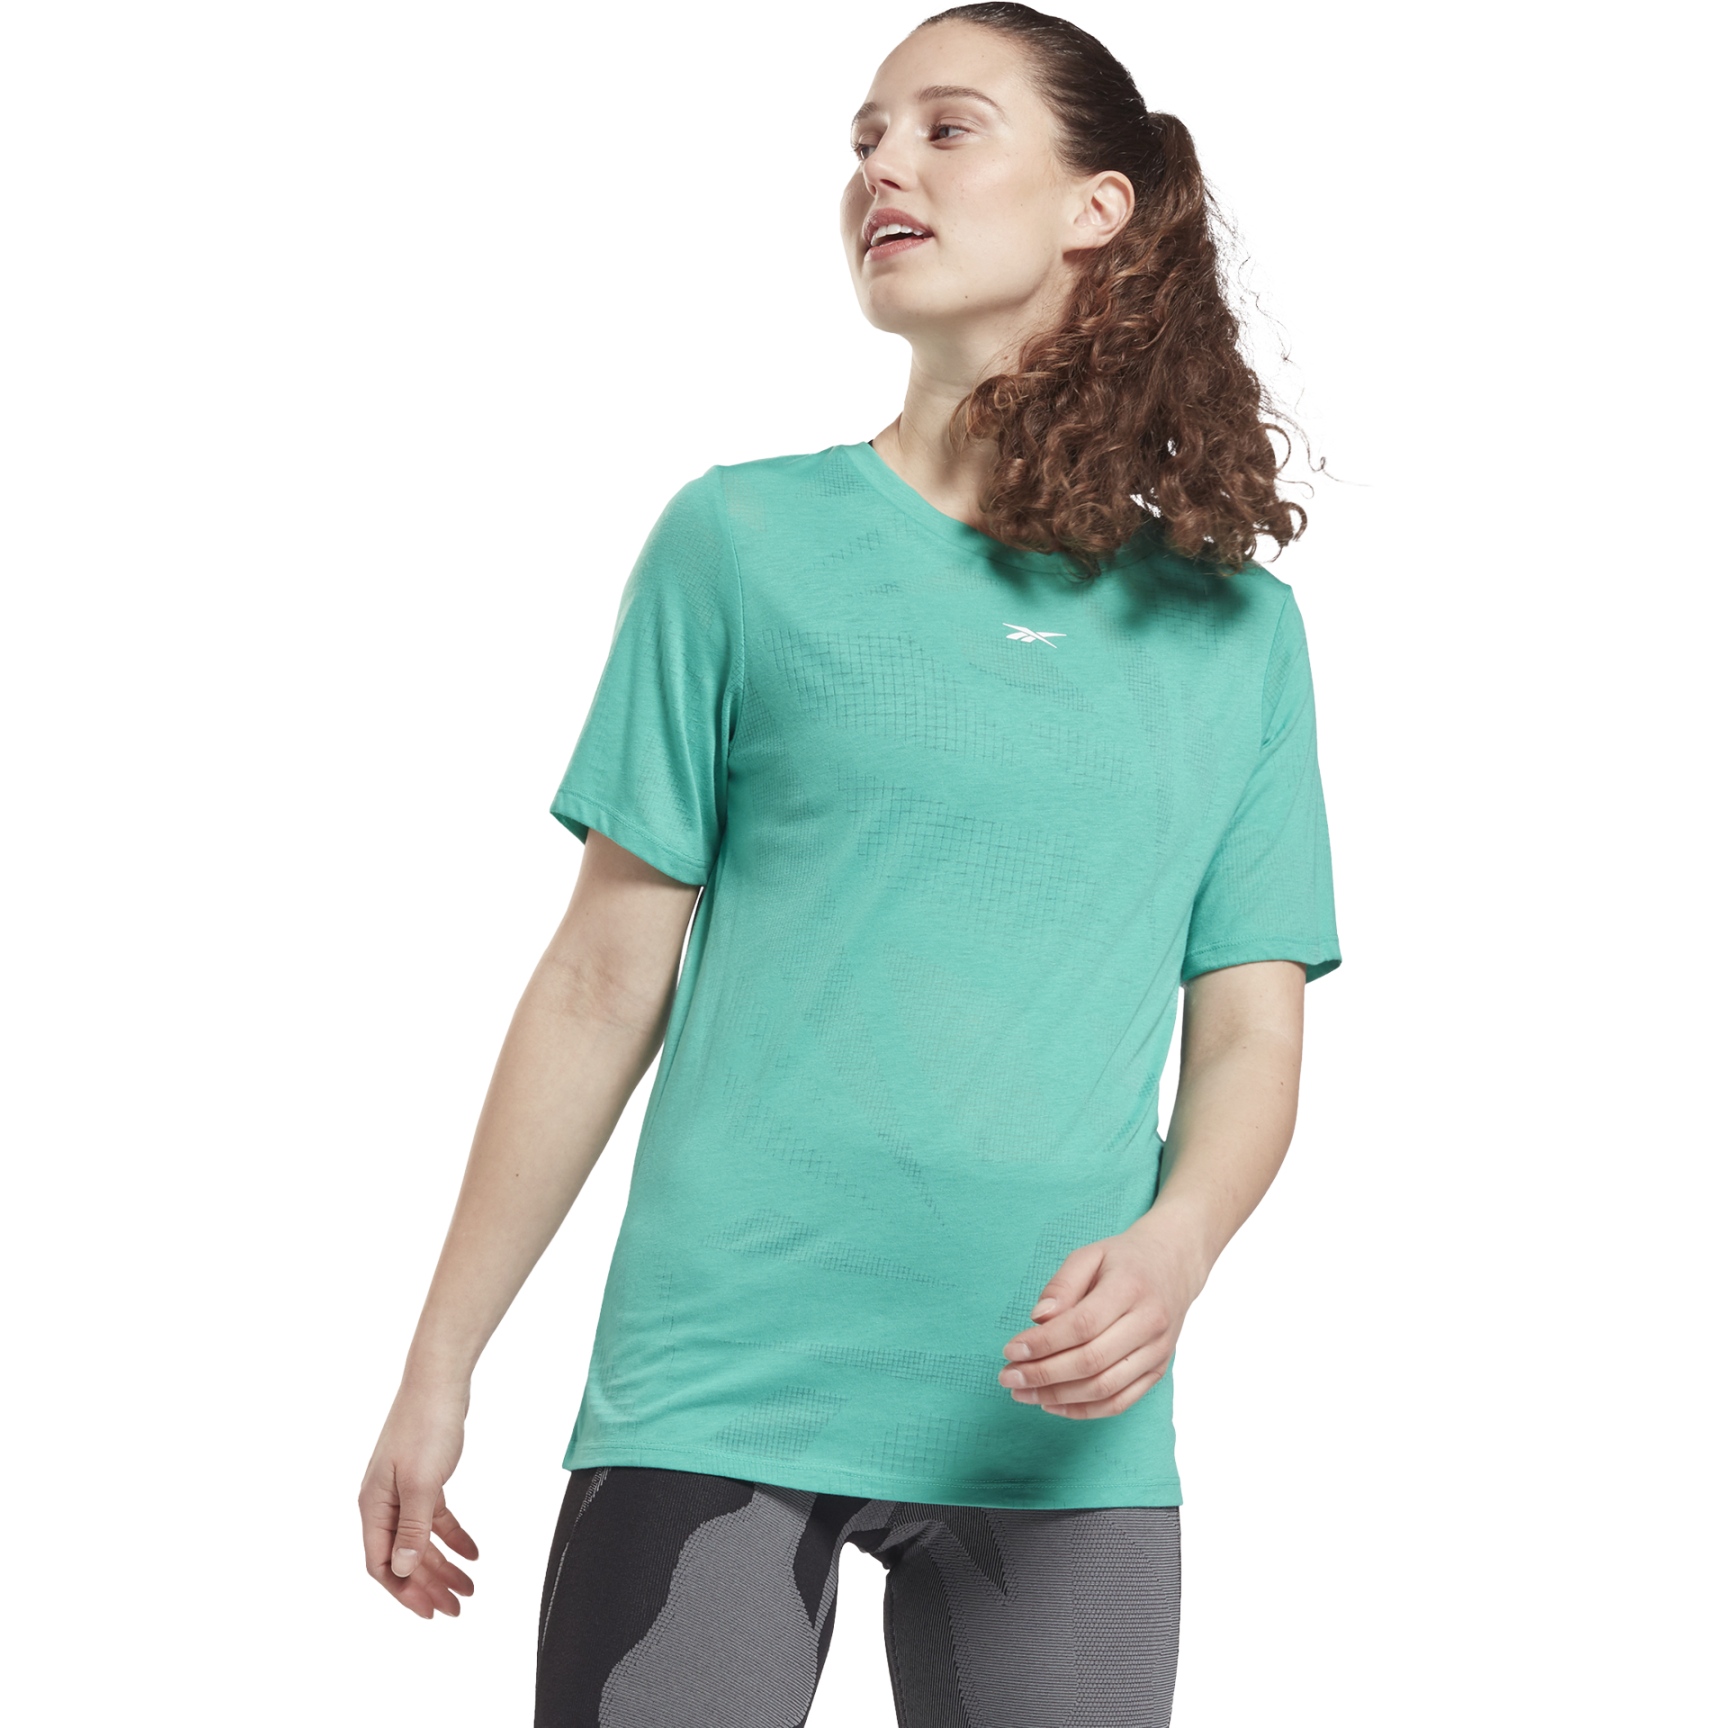 Produktbild von Reebok Burnout T-Shirt Damen - future teal